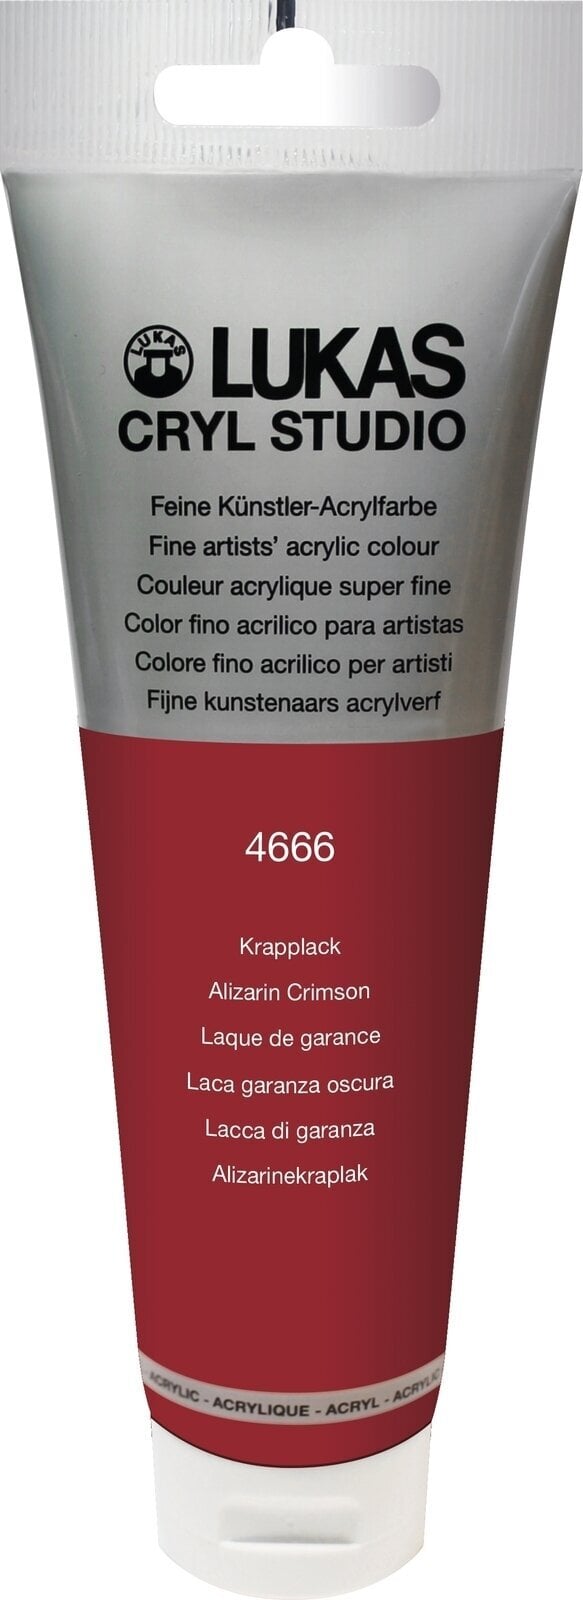 Tinta acrílica Lukas Cryl Studio Acrylic Paint Plastic Tube Tinta acrílica Alizarin Crimson 125 ml 1 un.